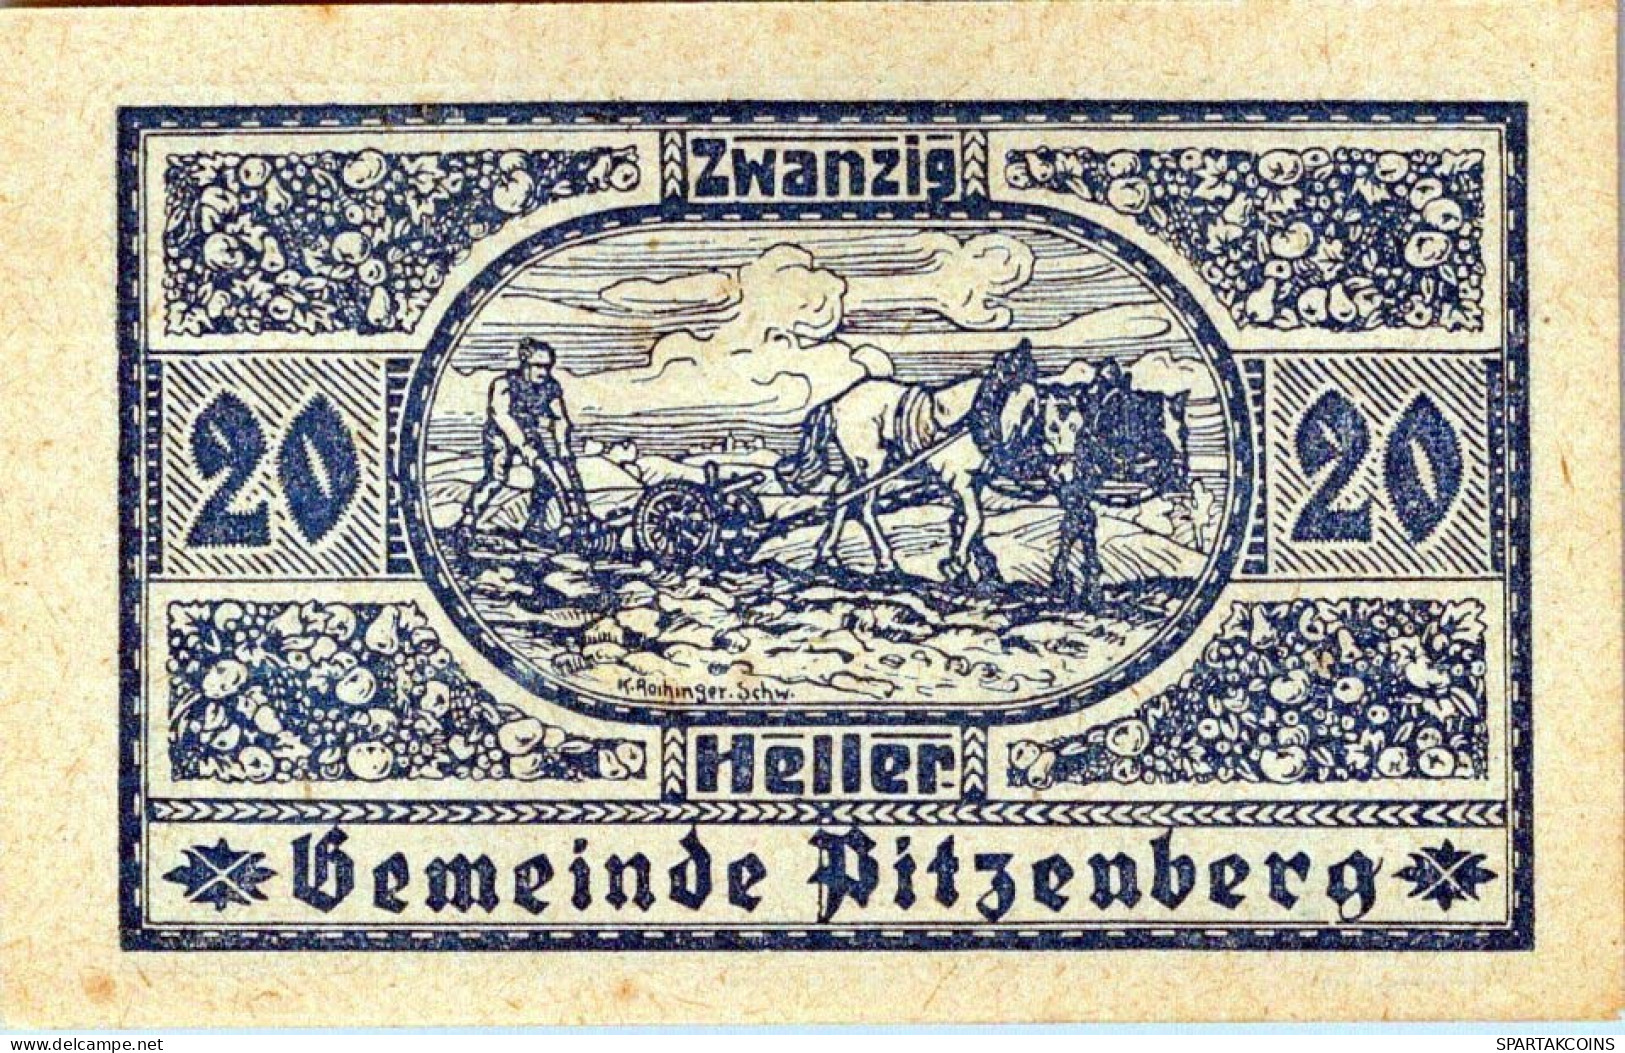 20 HELLER 1920 Stadt PITZENBERG Oberösterreich Österreich Notgeld Papiergeld Banknote #PG623 - [11] Emisiones Locales